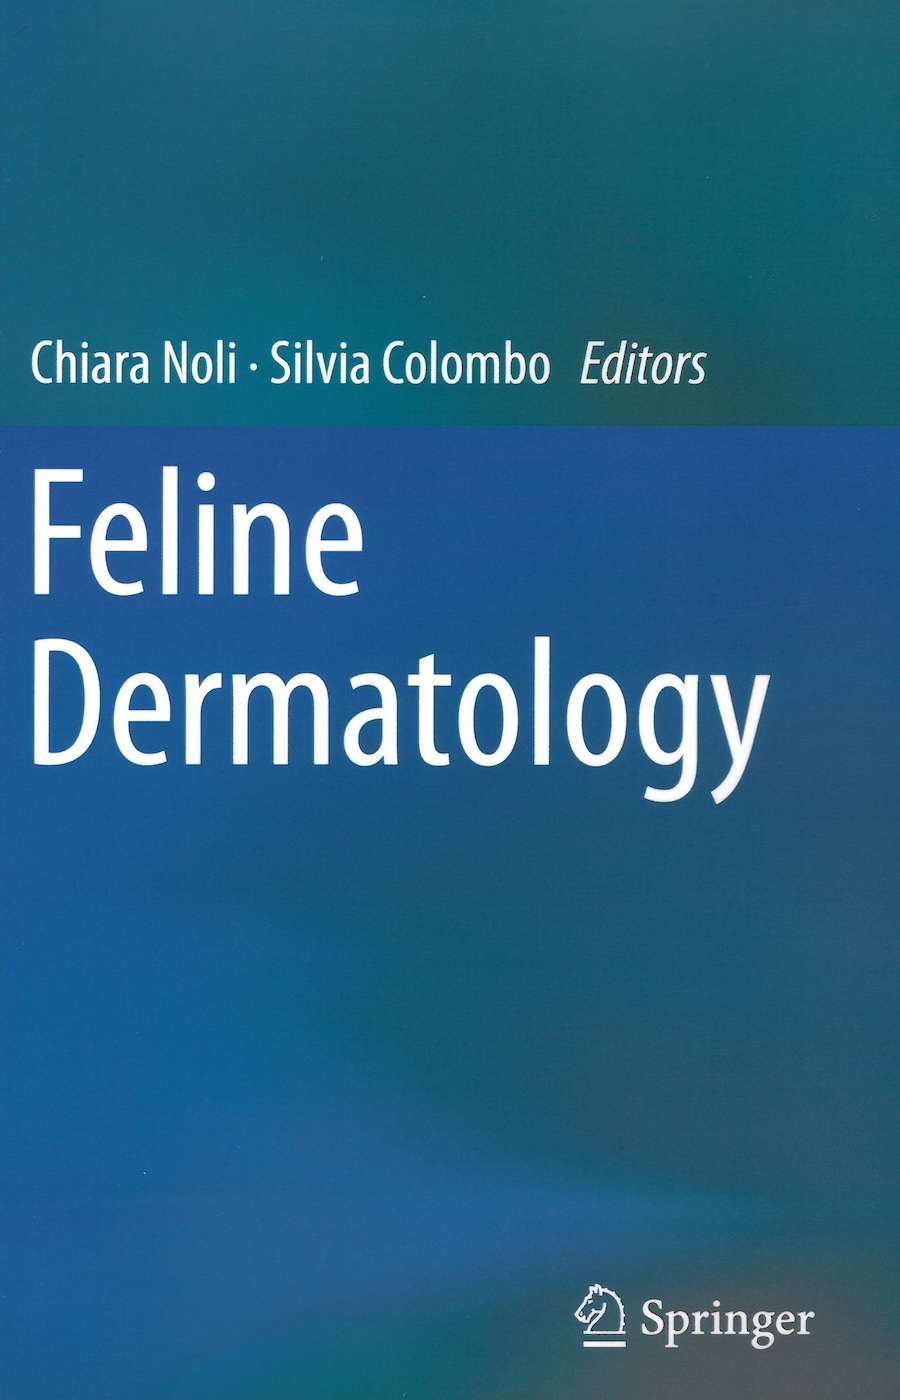 Feline dermatology